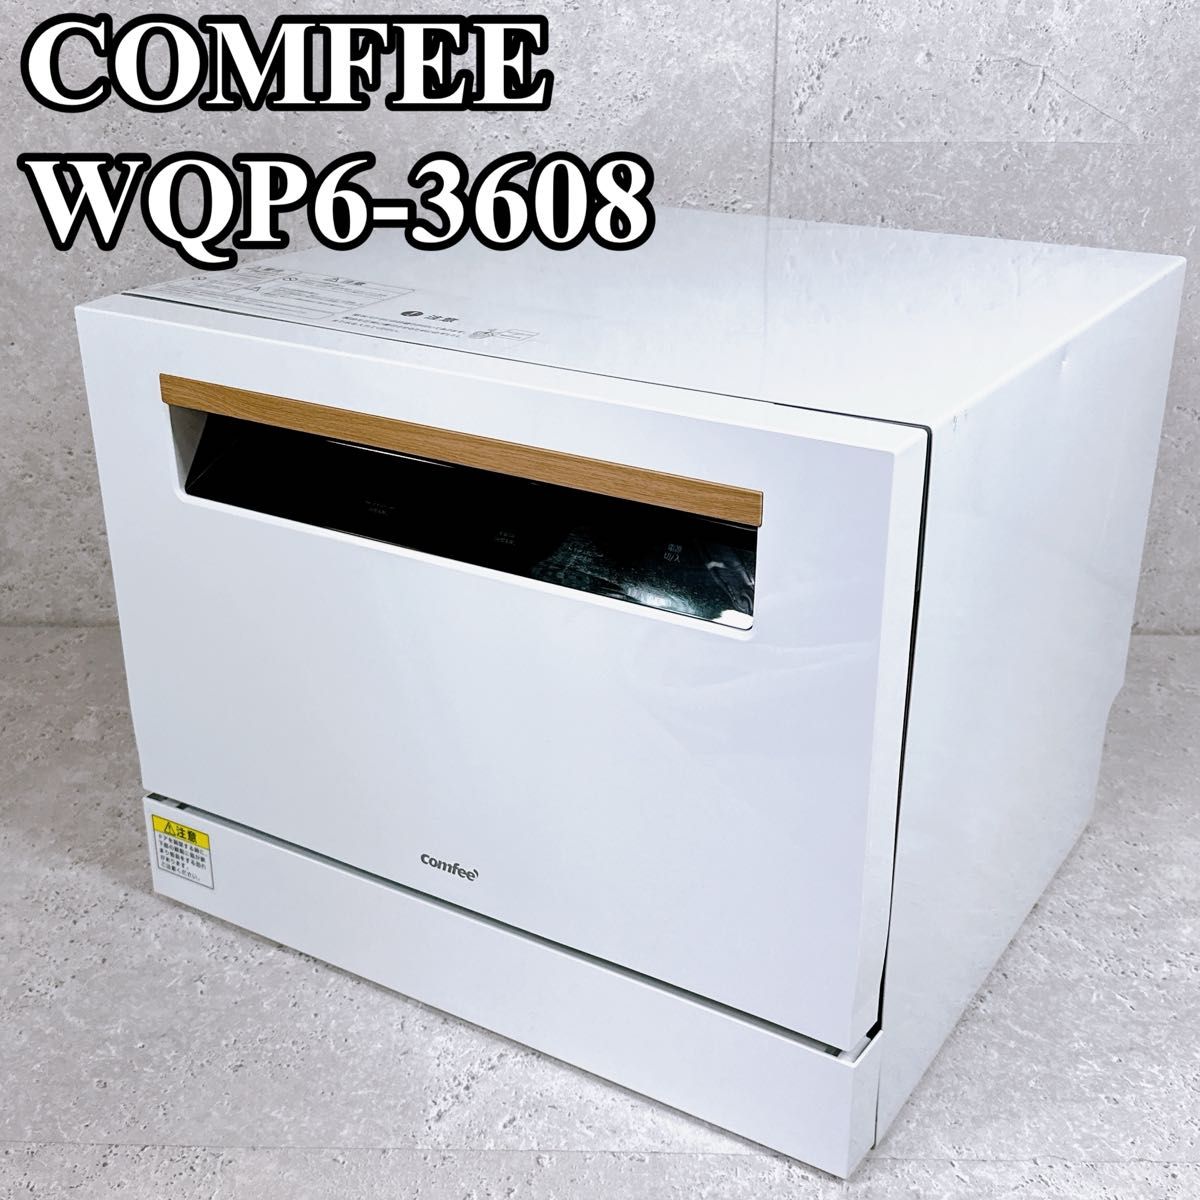 良品 comfee 食洗機 wqp6-3608 5人用 工事不要 UV除菌 静音 電気食器洗い乾燥機 コンフィー 節電 節水 